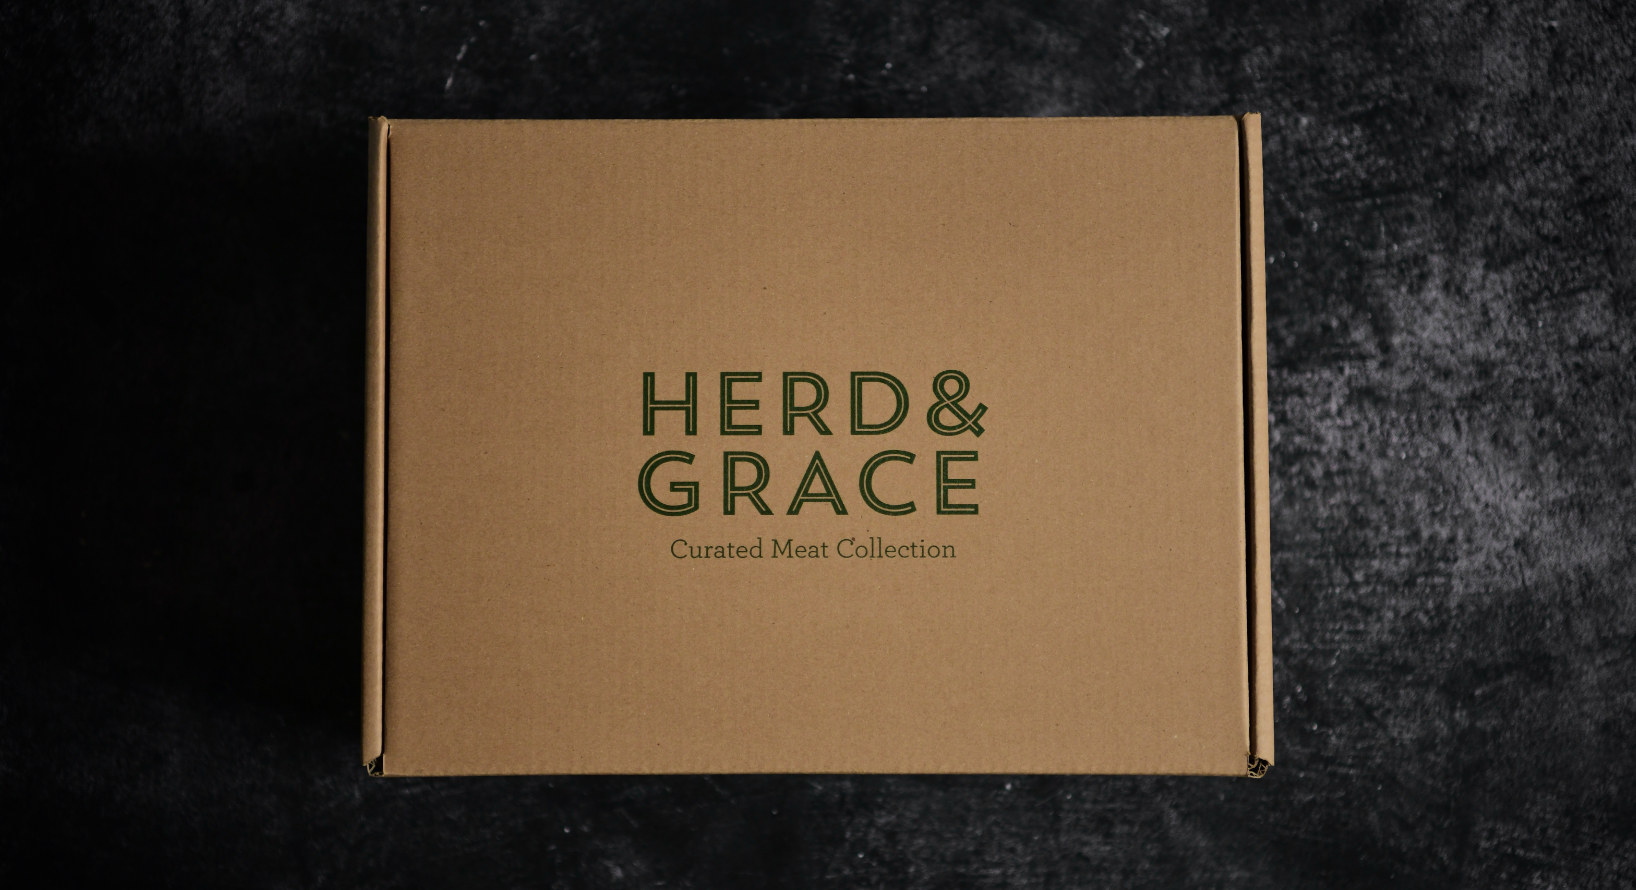 Herd & Grace Branded Meat Box